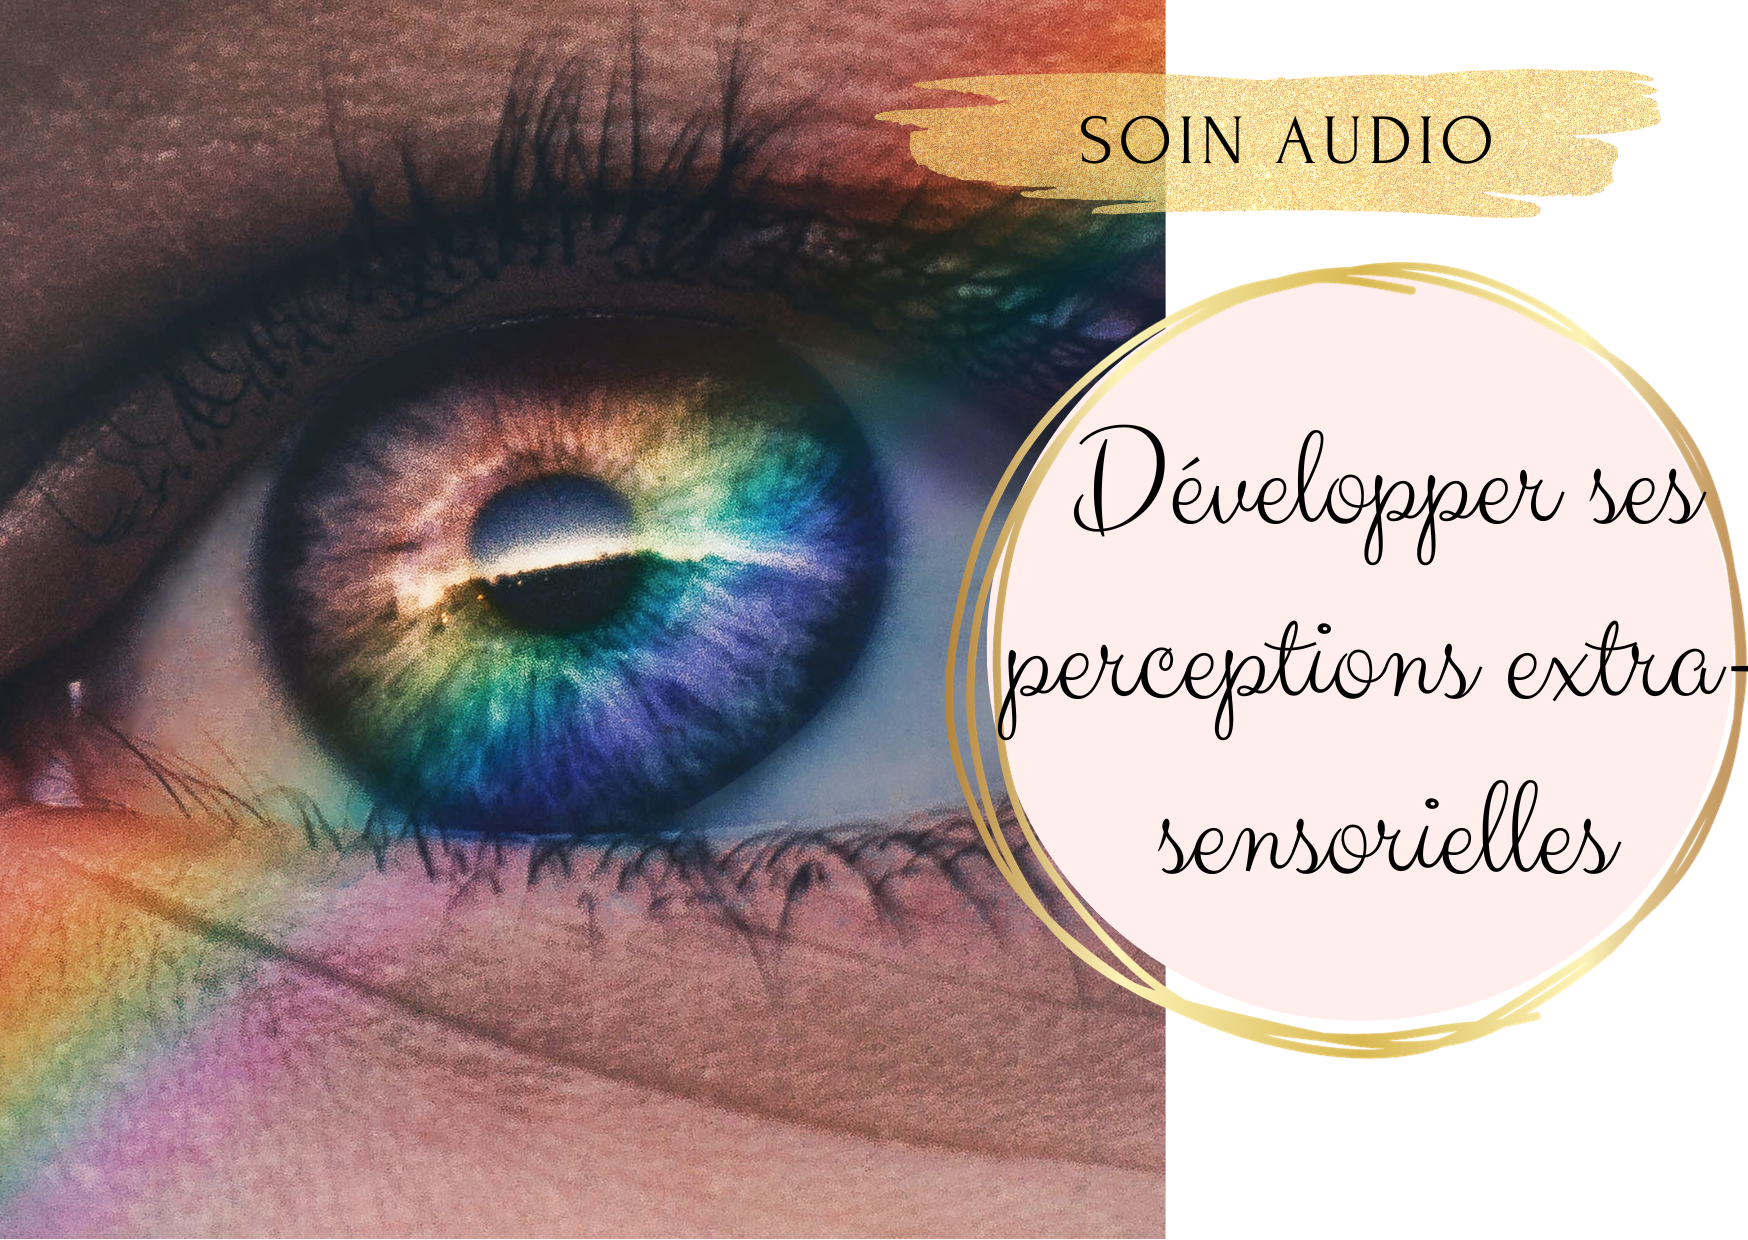 Soin audio - Développer ses perceptions extra-sensorielles et son intuition